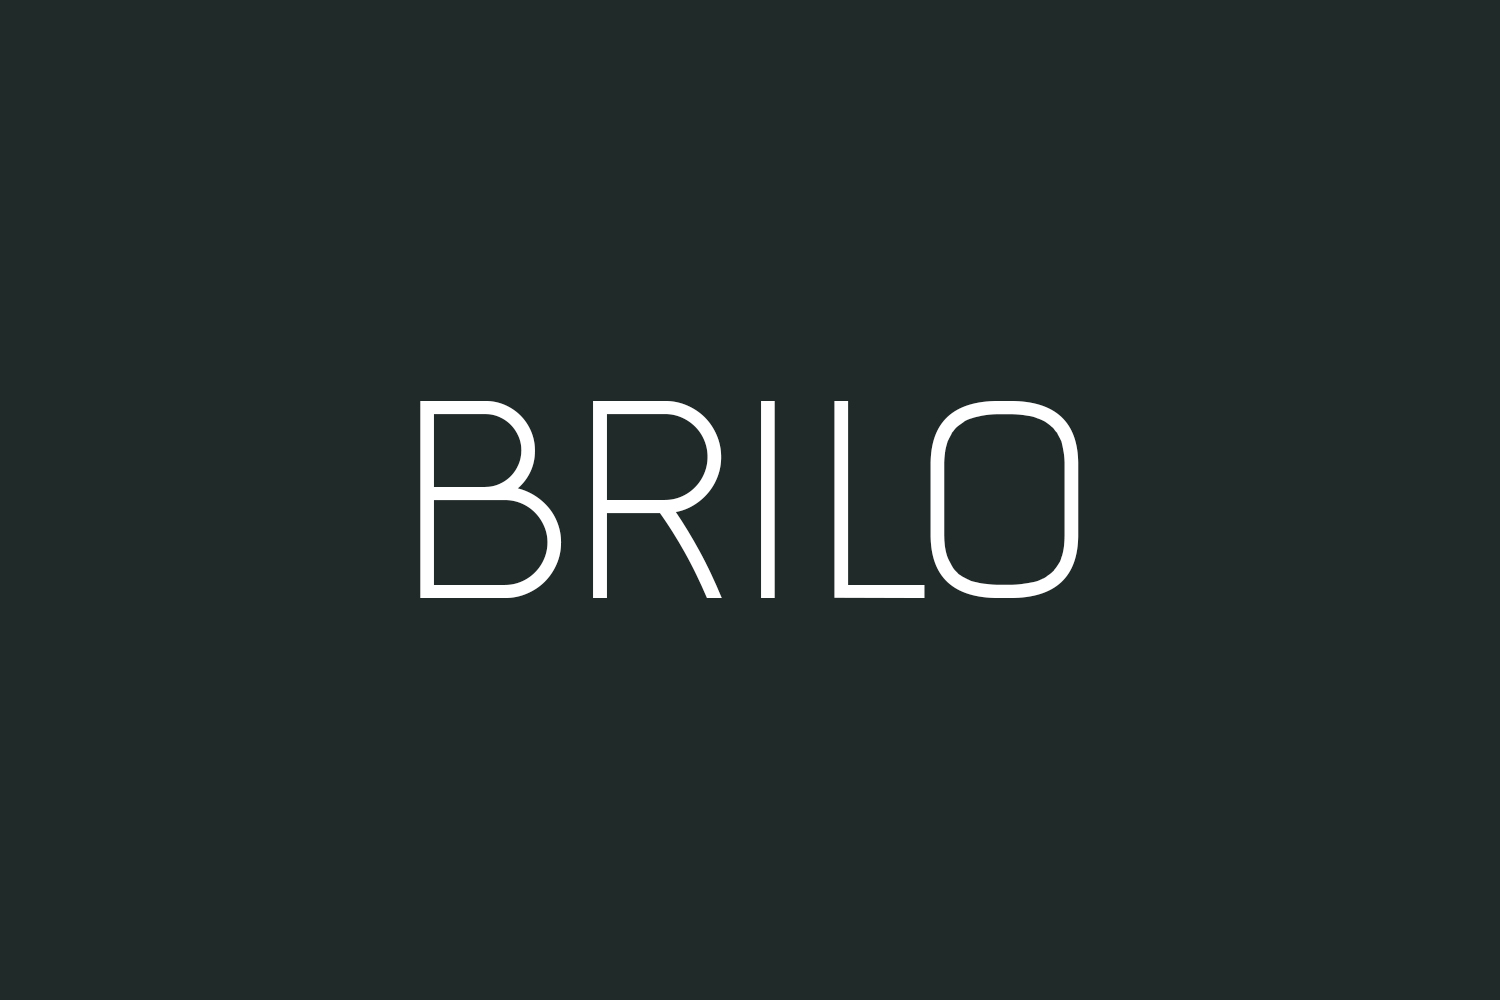 Brilo Free Font